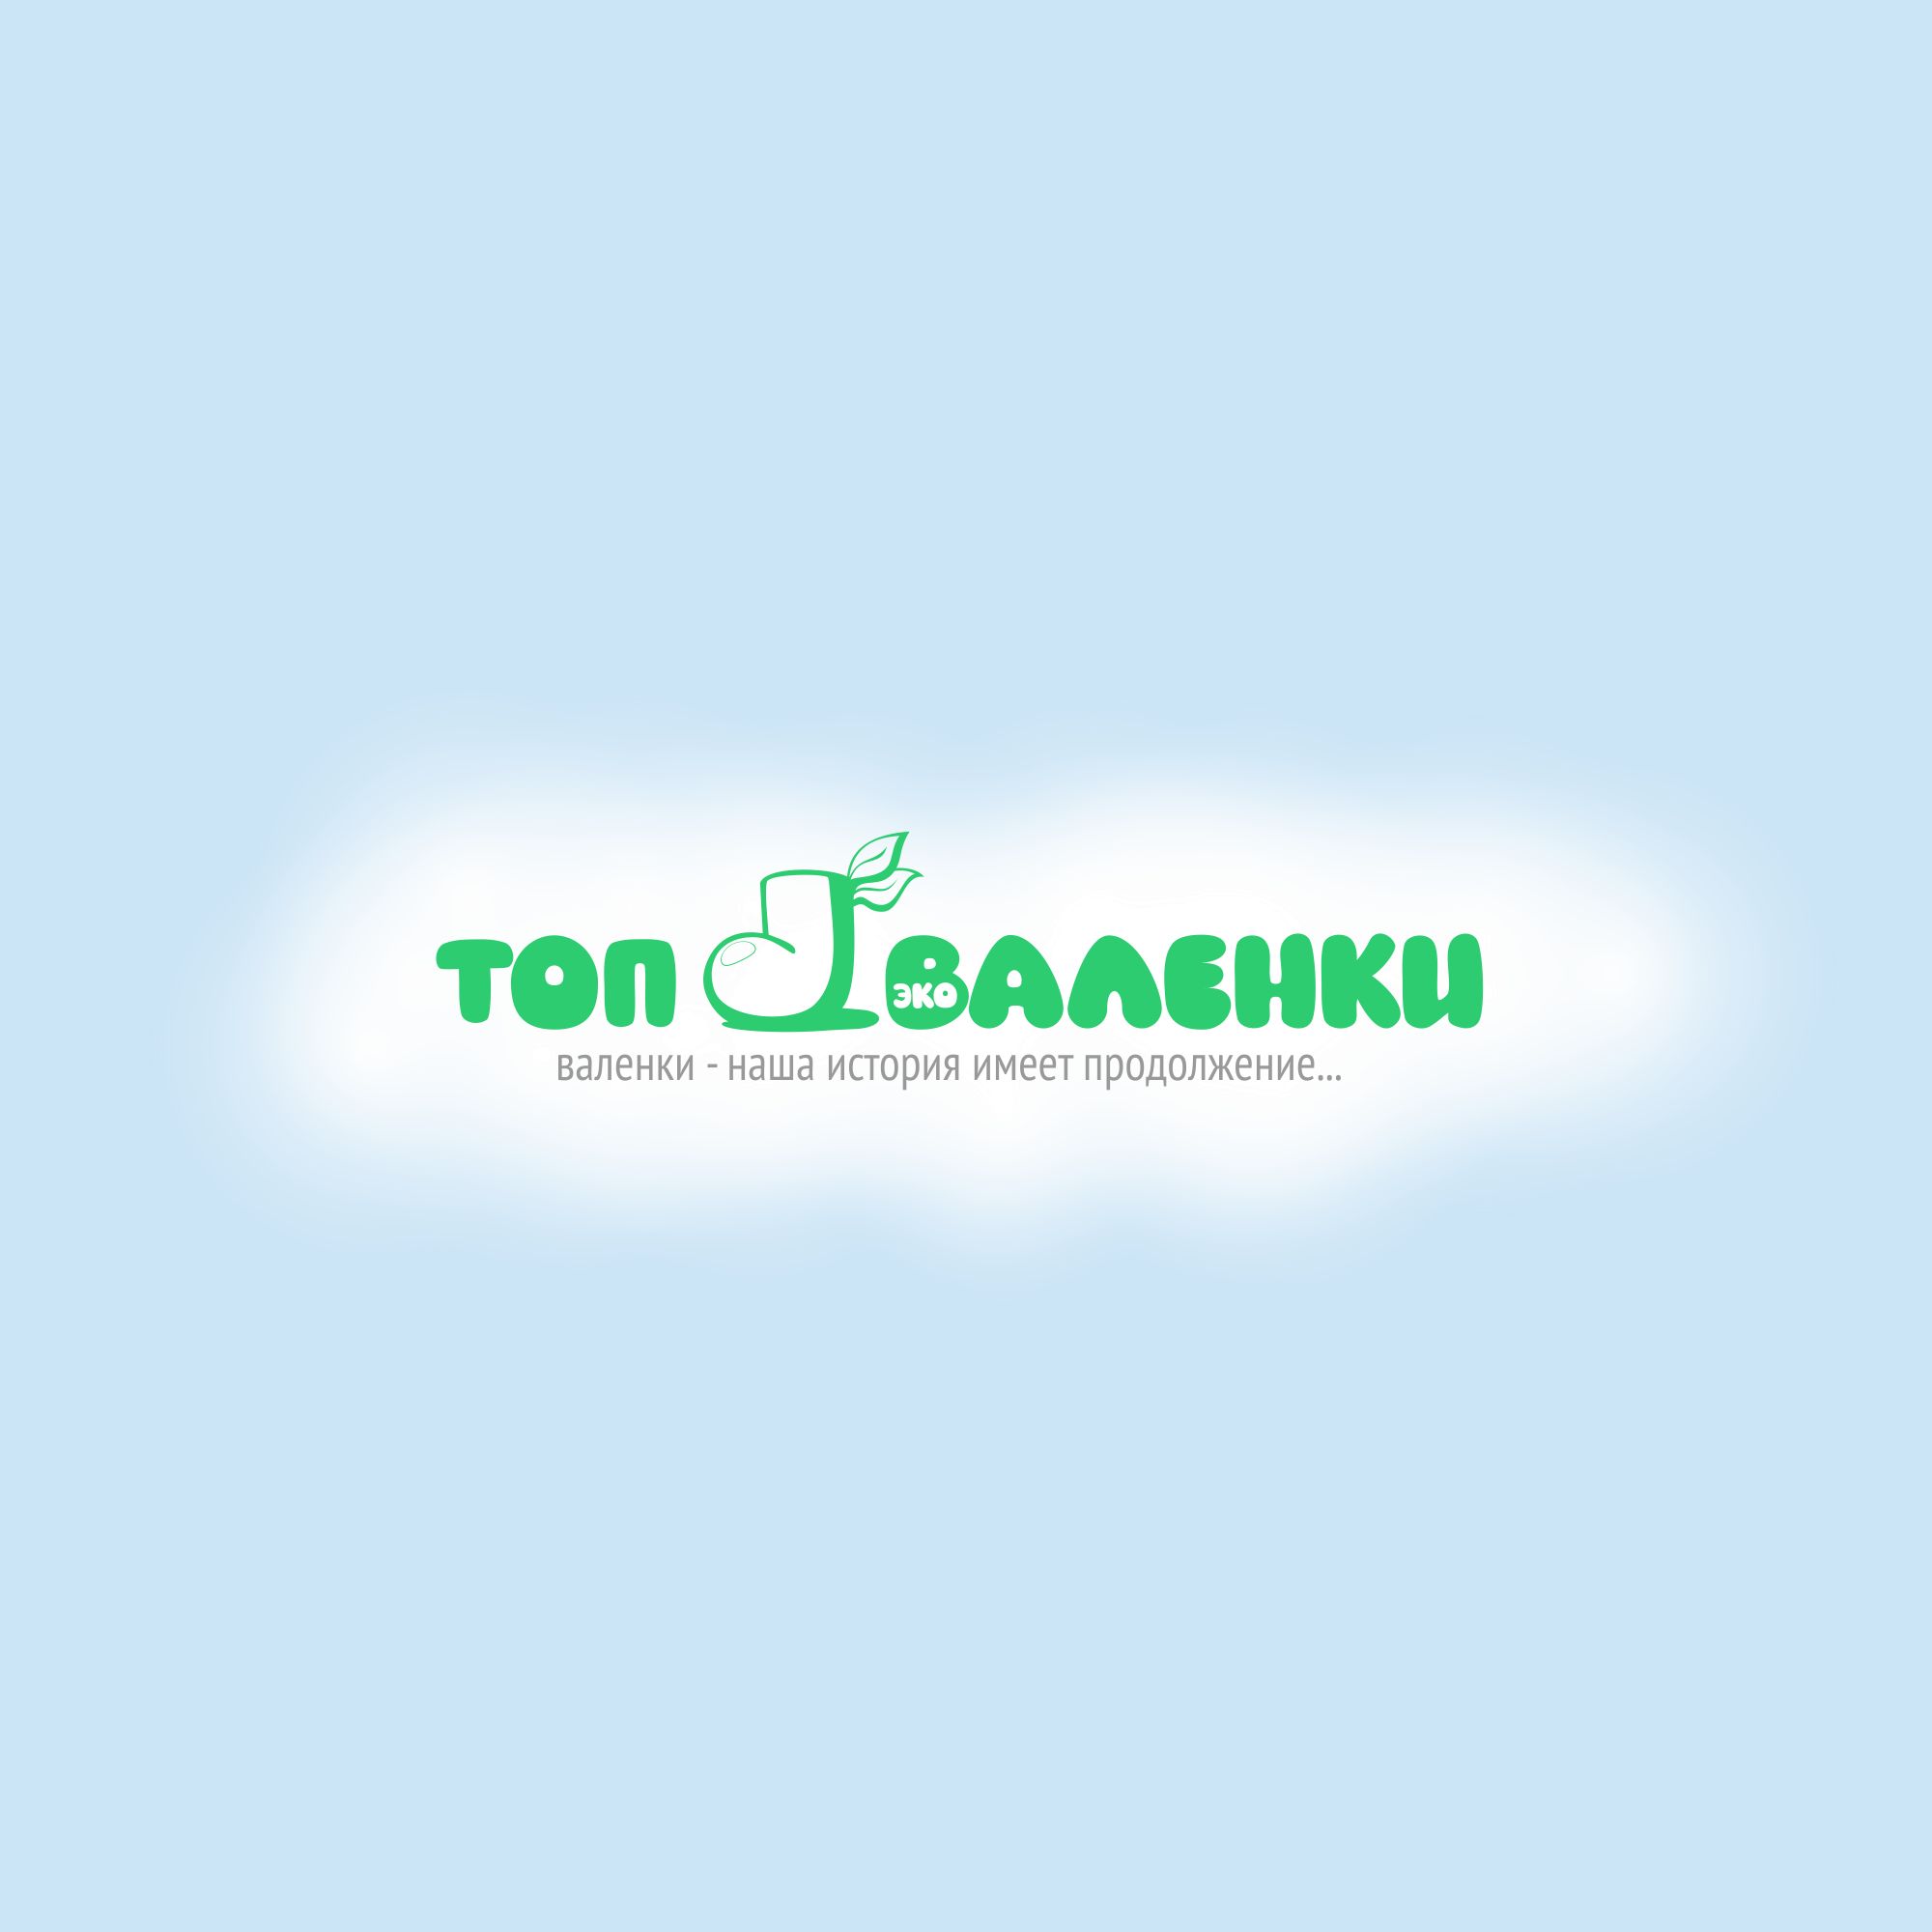 Логотип для интернет-магазина Валенки - дизайнер bitart